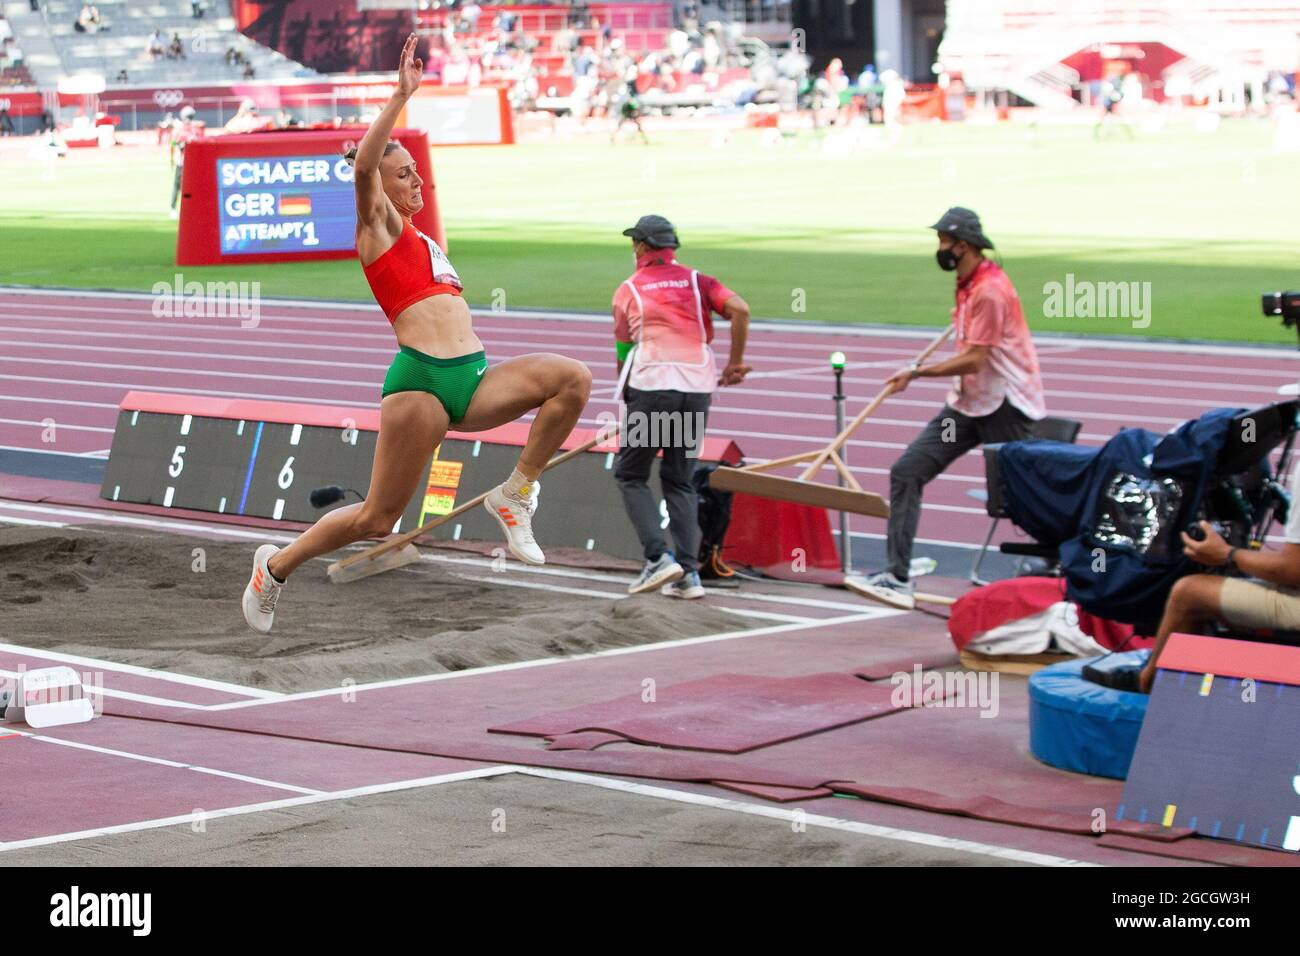 05. August 2021: Xenia Krizsan (2267) aus Ungarn während des Frauen-Heptathlon-Weitsprung-Events während des Leichtathletik-Wettbewerbs im Olympiastadion in Tokio, Japan. Daniel Lea/CSM} Stockfoto